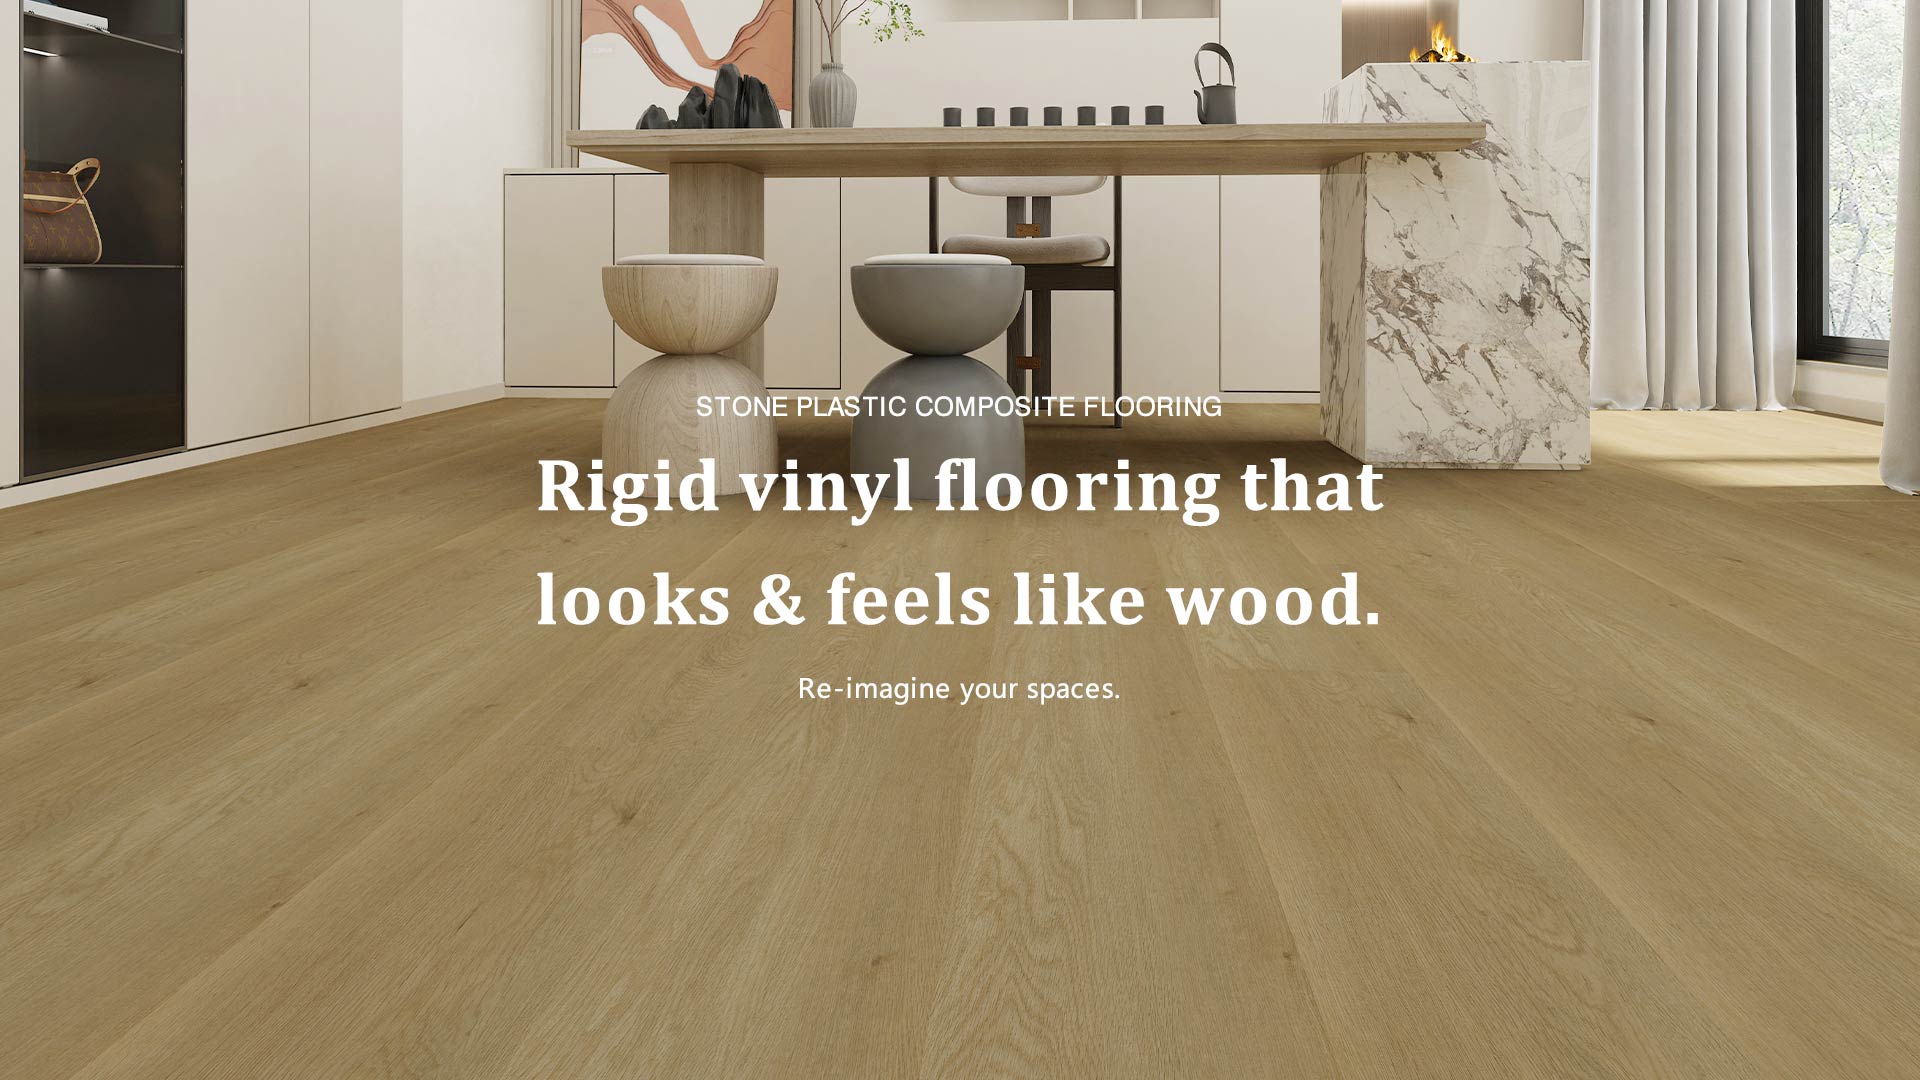 Rigid vinyl flooring that looks & feels like wood.